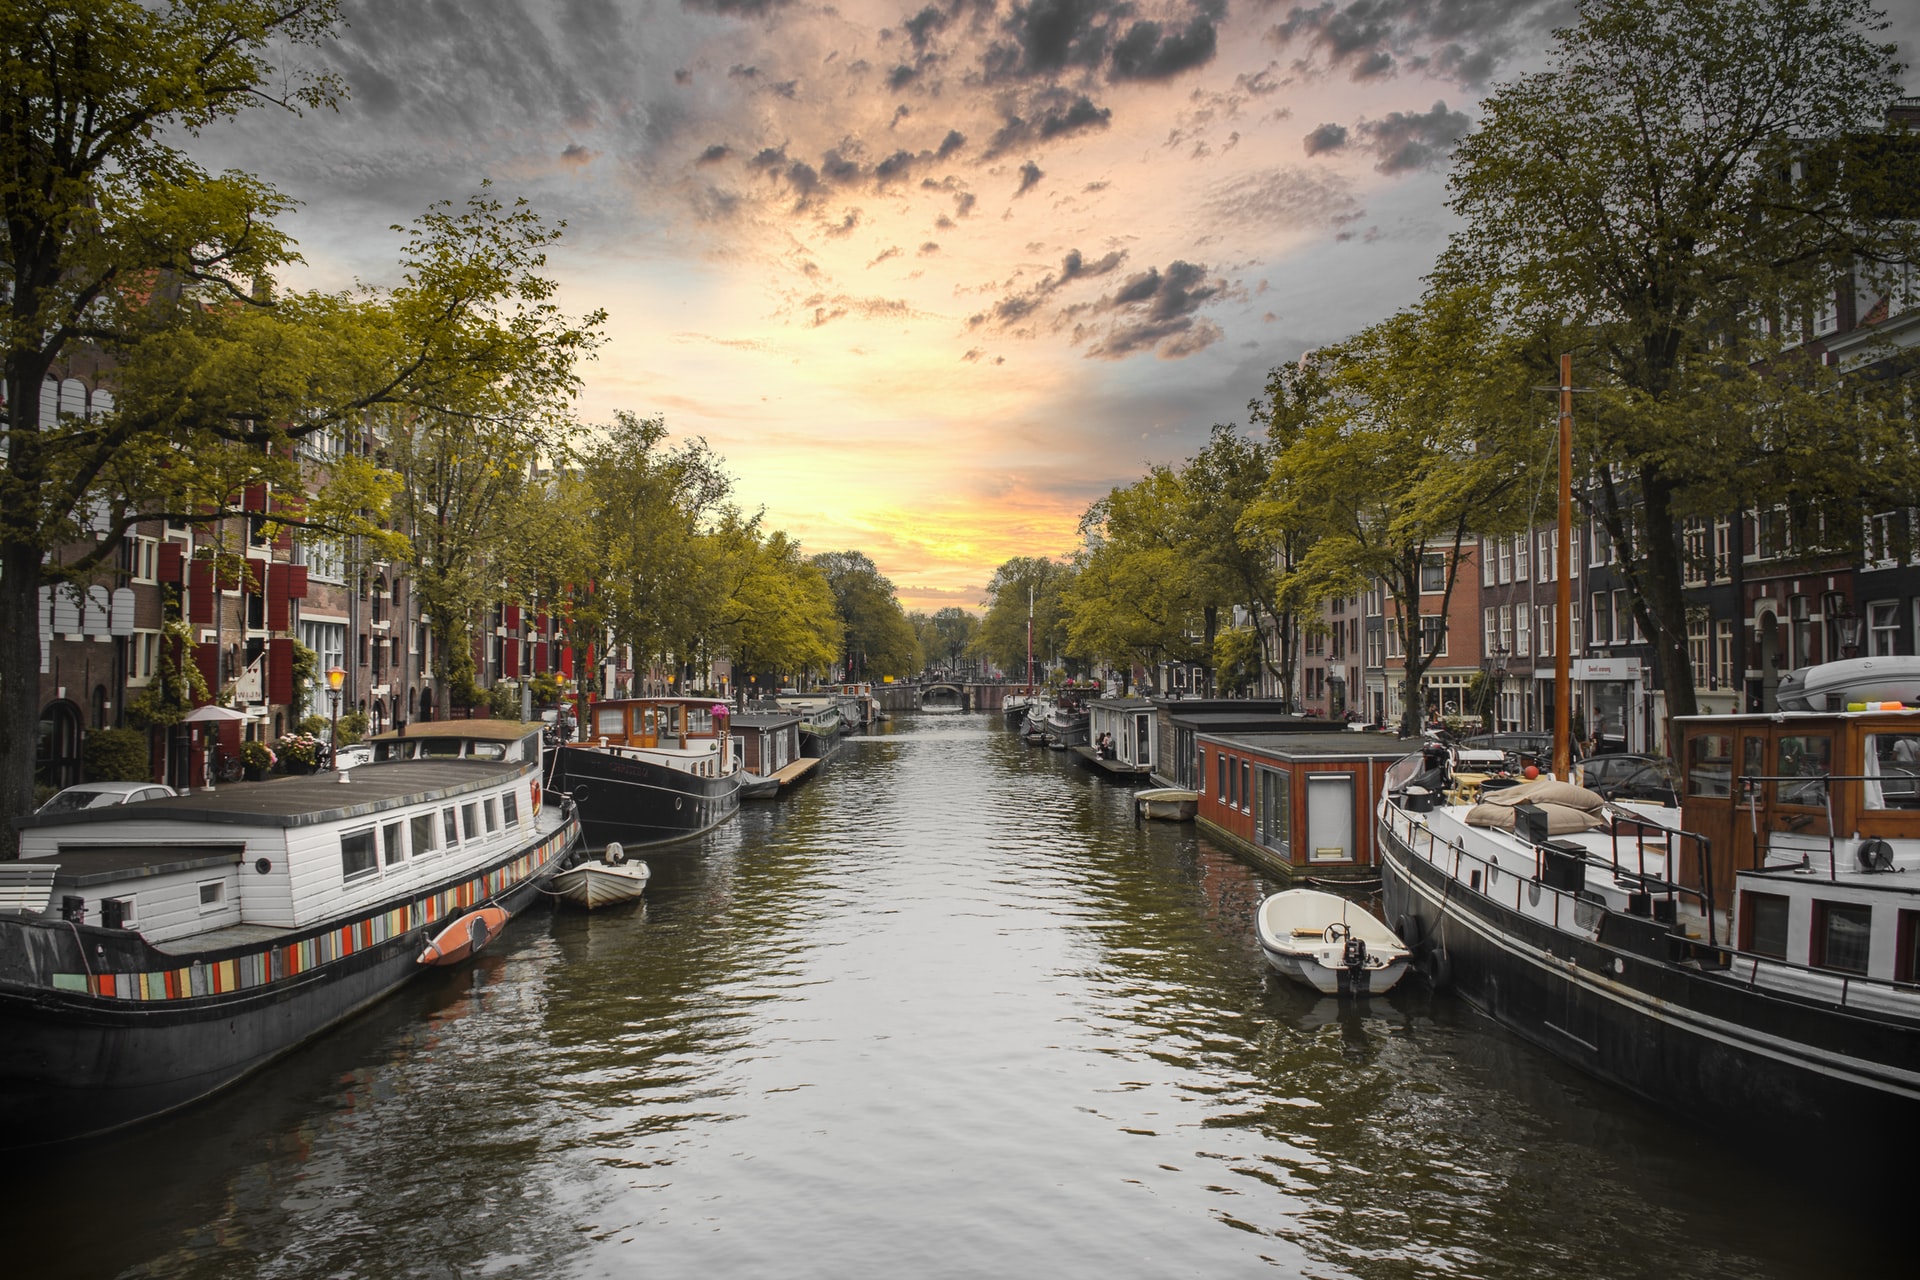 La cintura dei canali di Amsterdam, o Grachtengordel, è un'area pittoresca e vivace che costeggia i quattro canali principali della città: Singel, Herengracht, Keizersgracht e Prinsengracht.